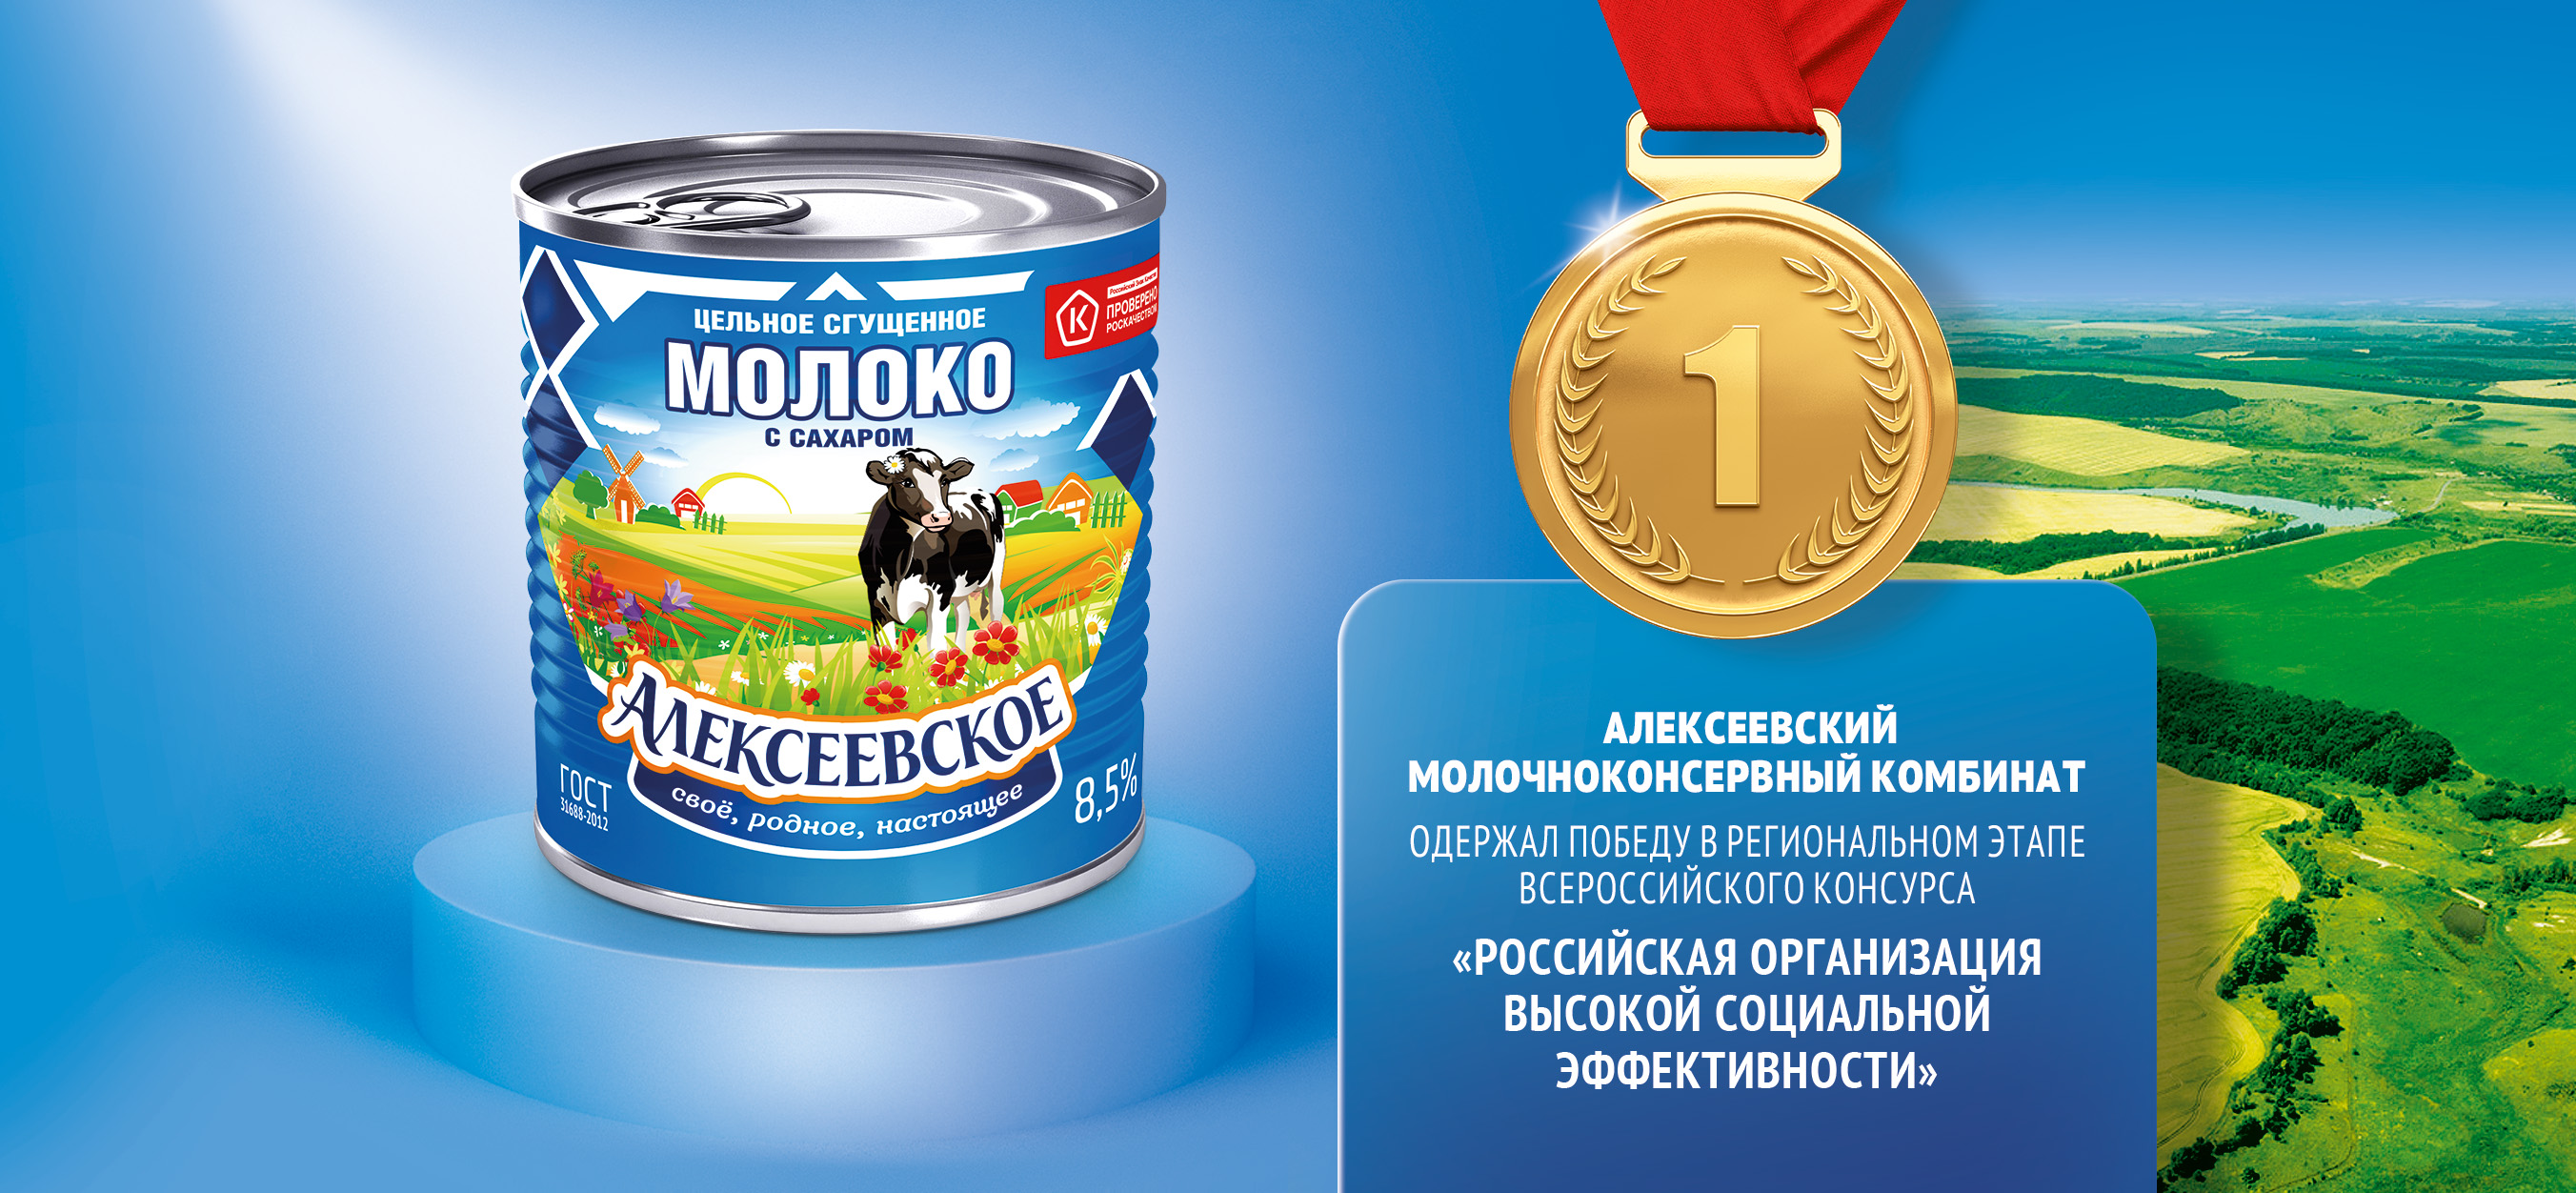 Изображение Алексеевский молочноконсервный комбинат одержал победу в региональном этапе всероссийского конкурса